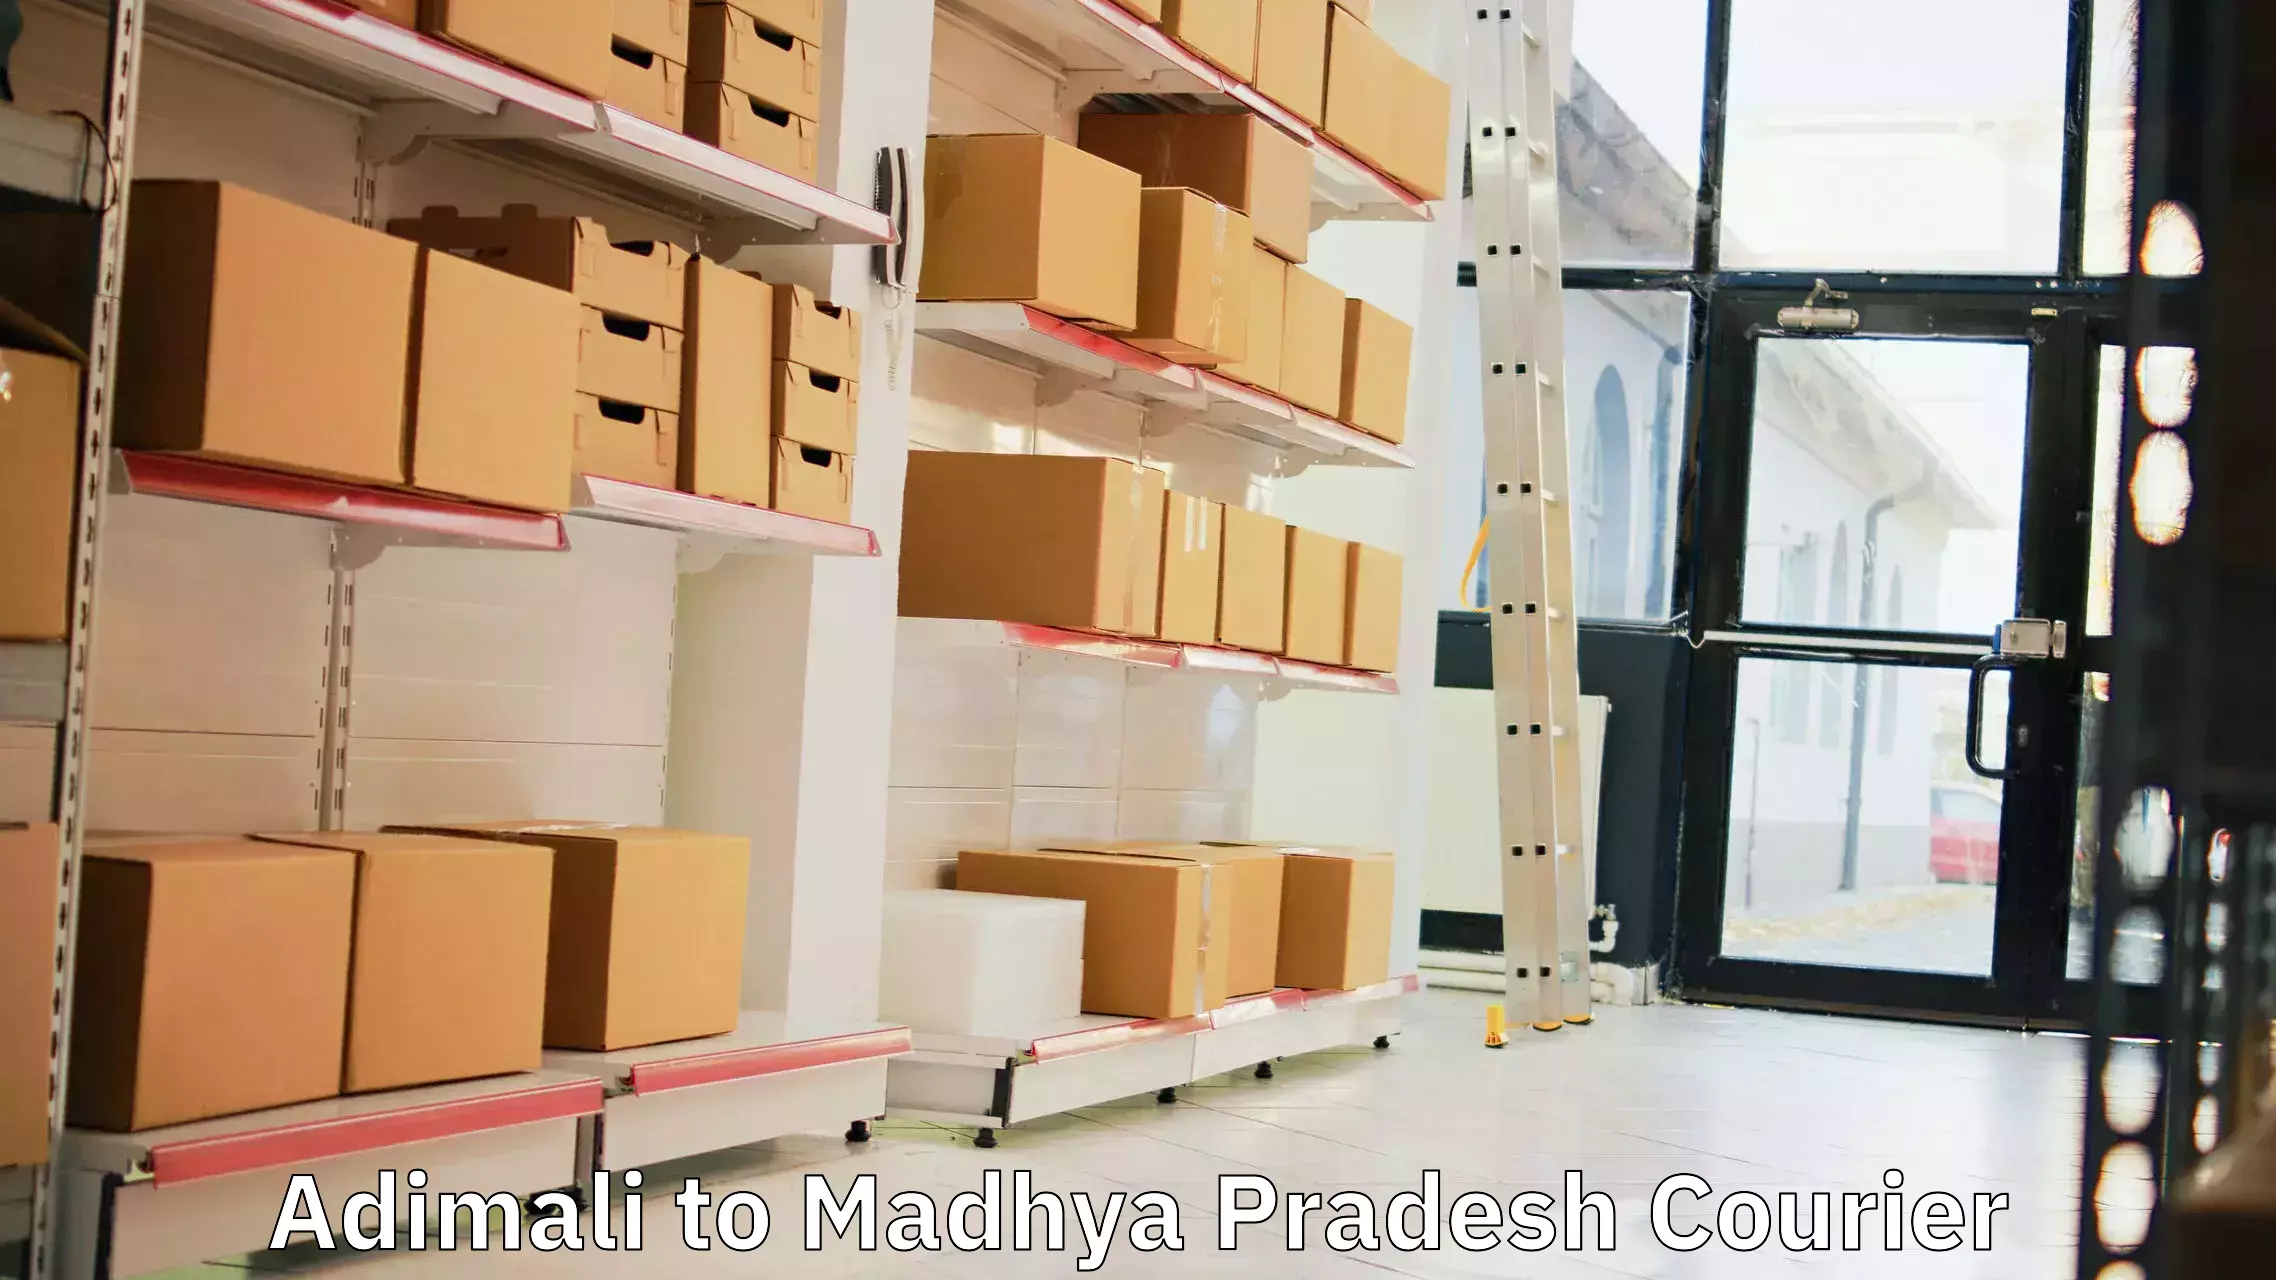 Express courier capabilities Adimali to Madhya Pradesh